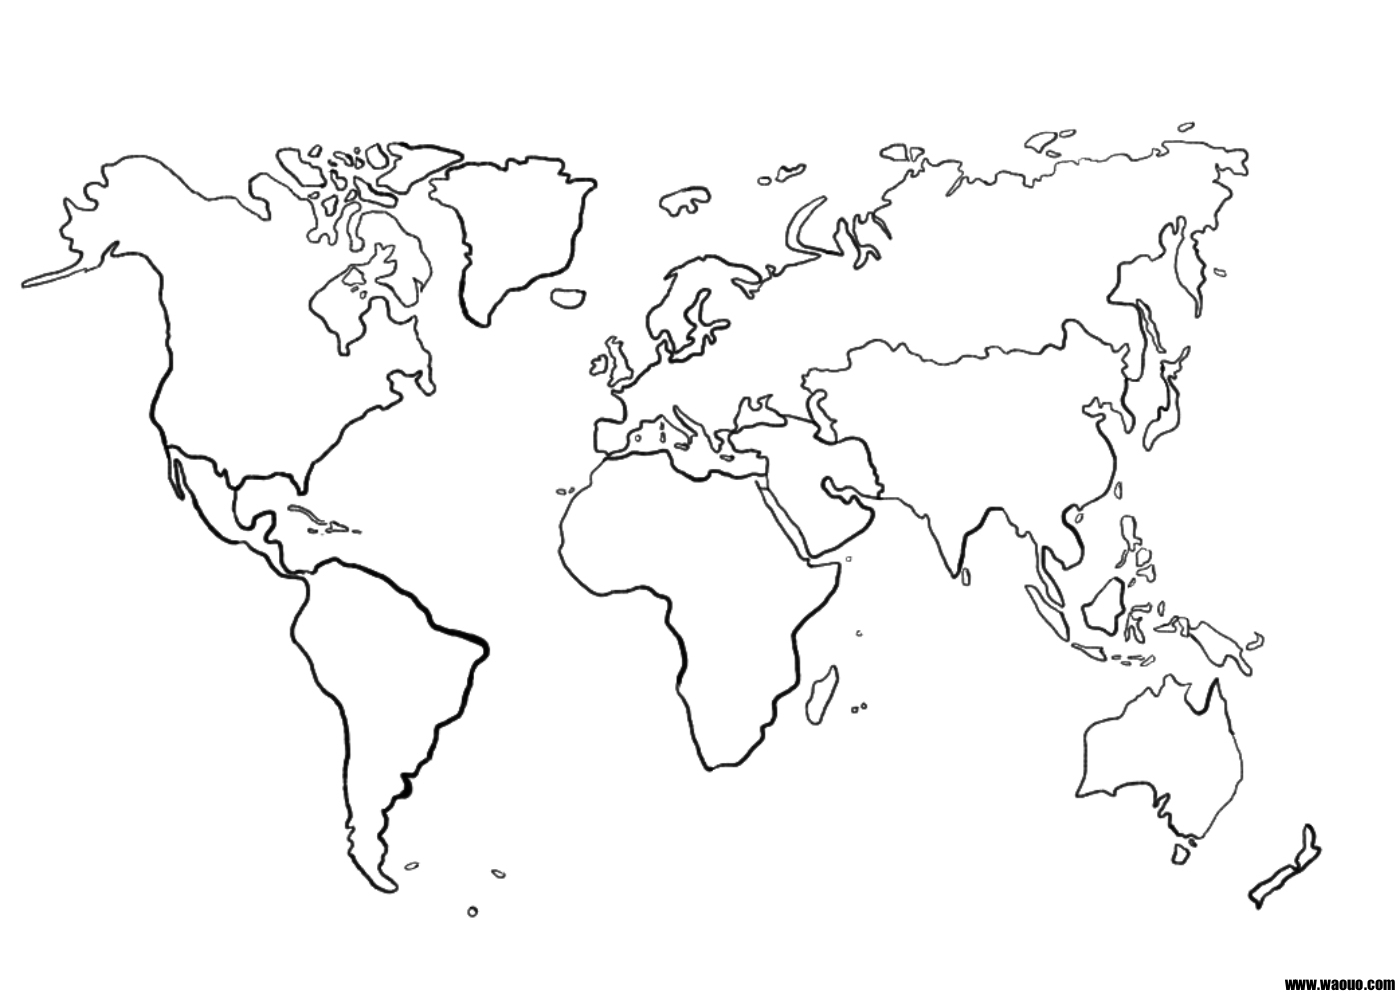 Une Carte Du Monde (Mappemonde) Vierge Pour La Géographie À intérieur Carte Europe Vierge À Compléter En Ligne 